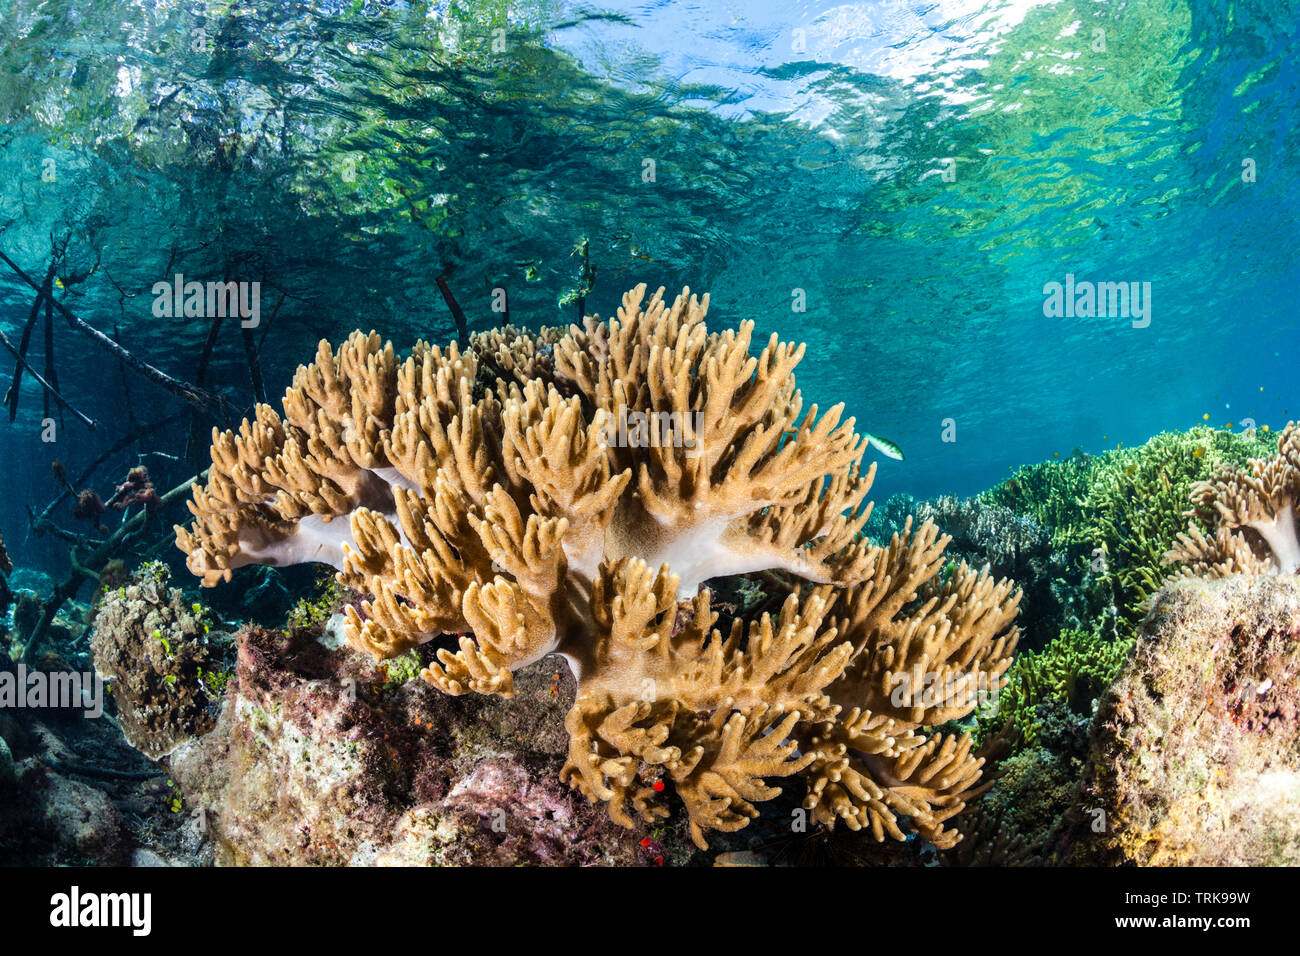 La croissance des coraux mous en cuir dans les Mangroves, Sinularia, Lissenung, New Ireland, Papouasie Nouvelle Guinée Banque D'Images